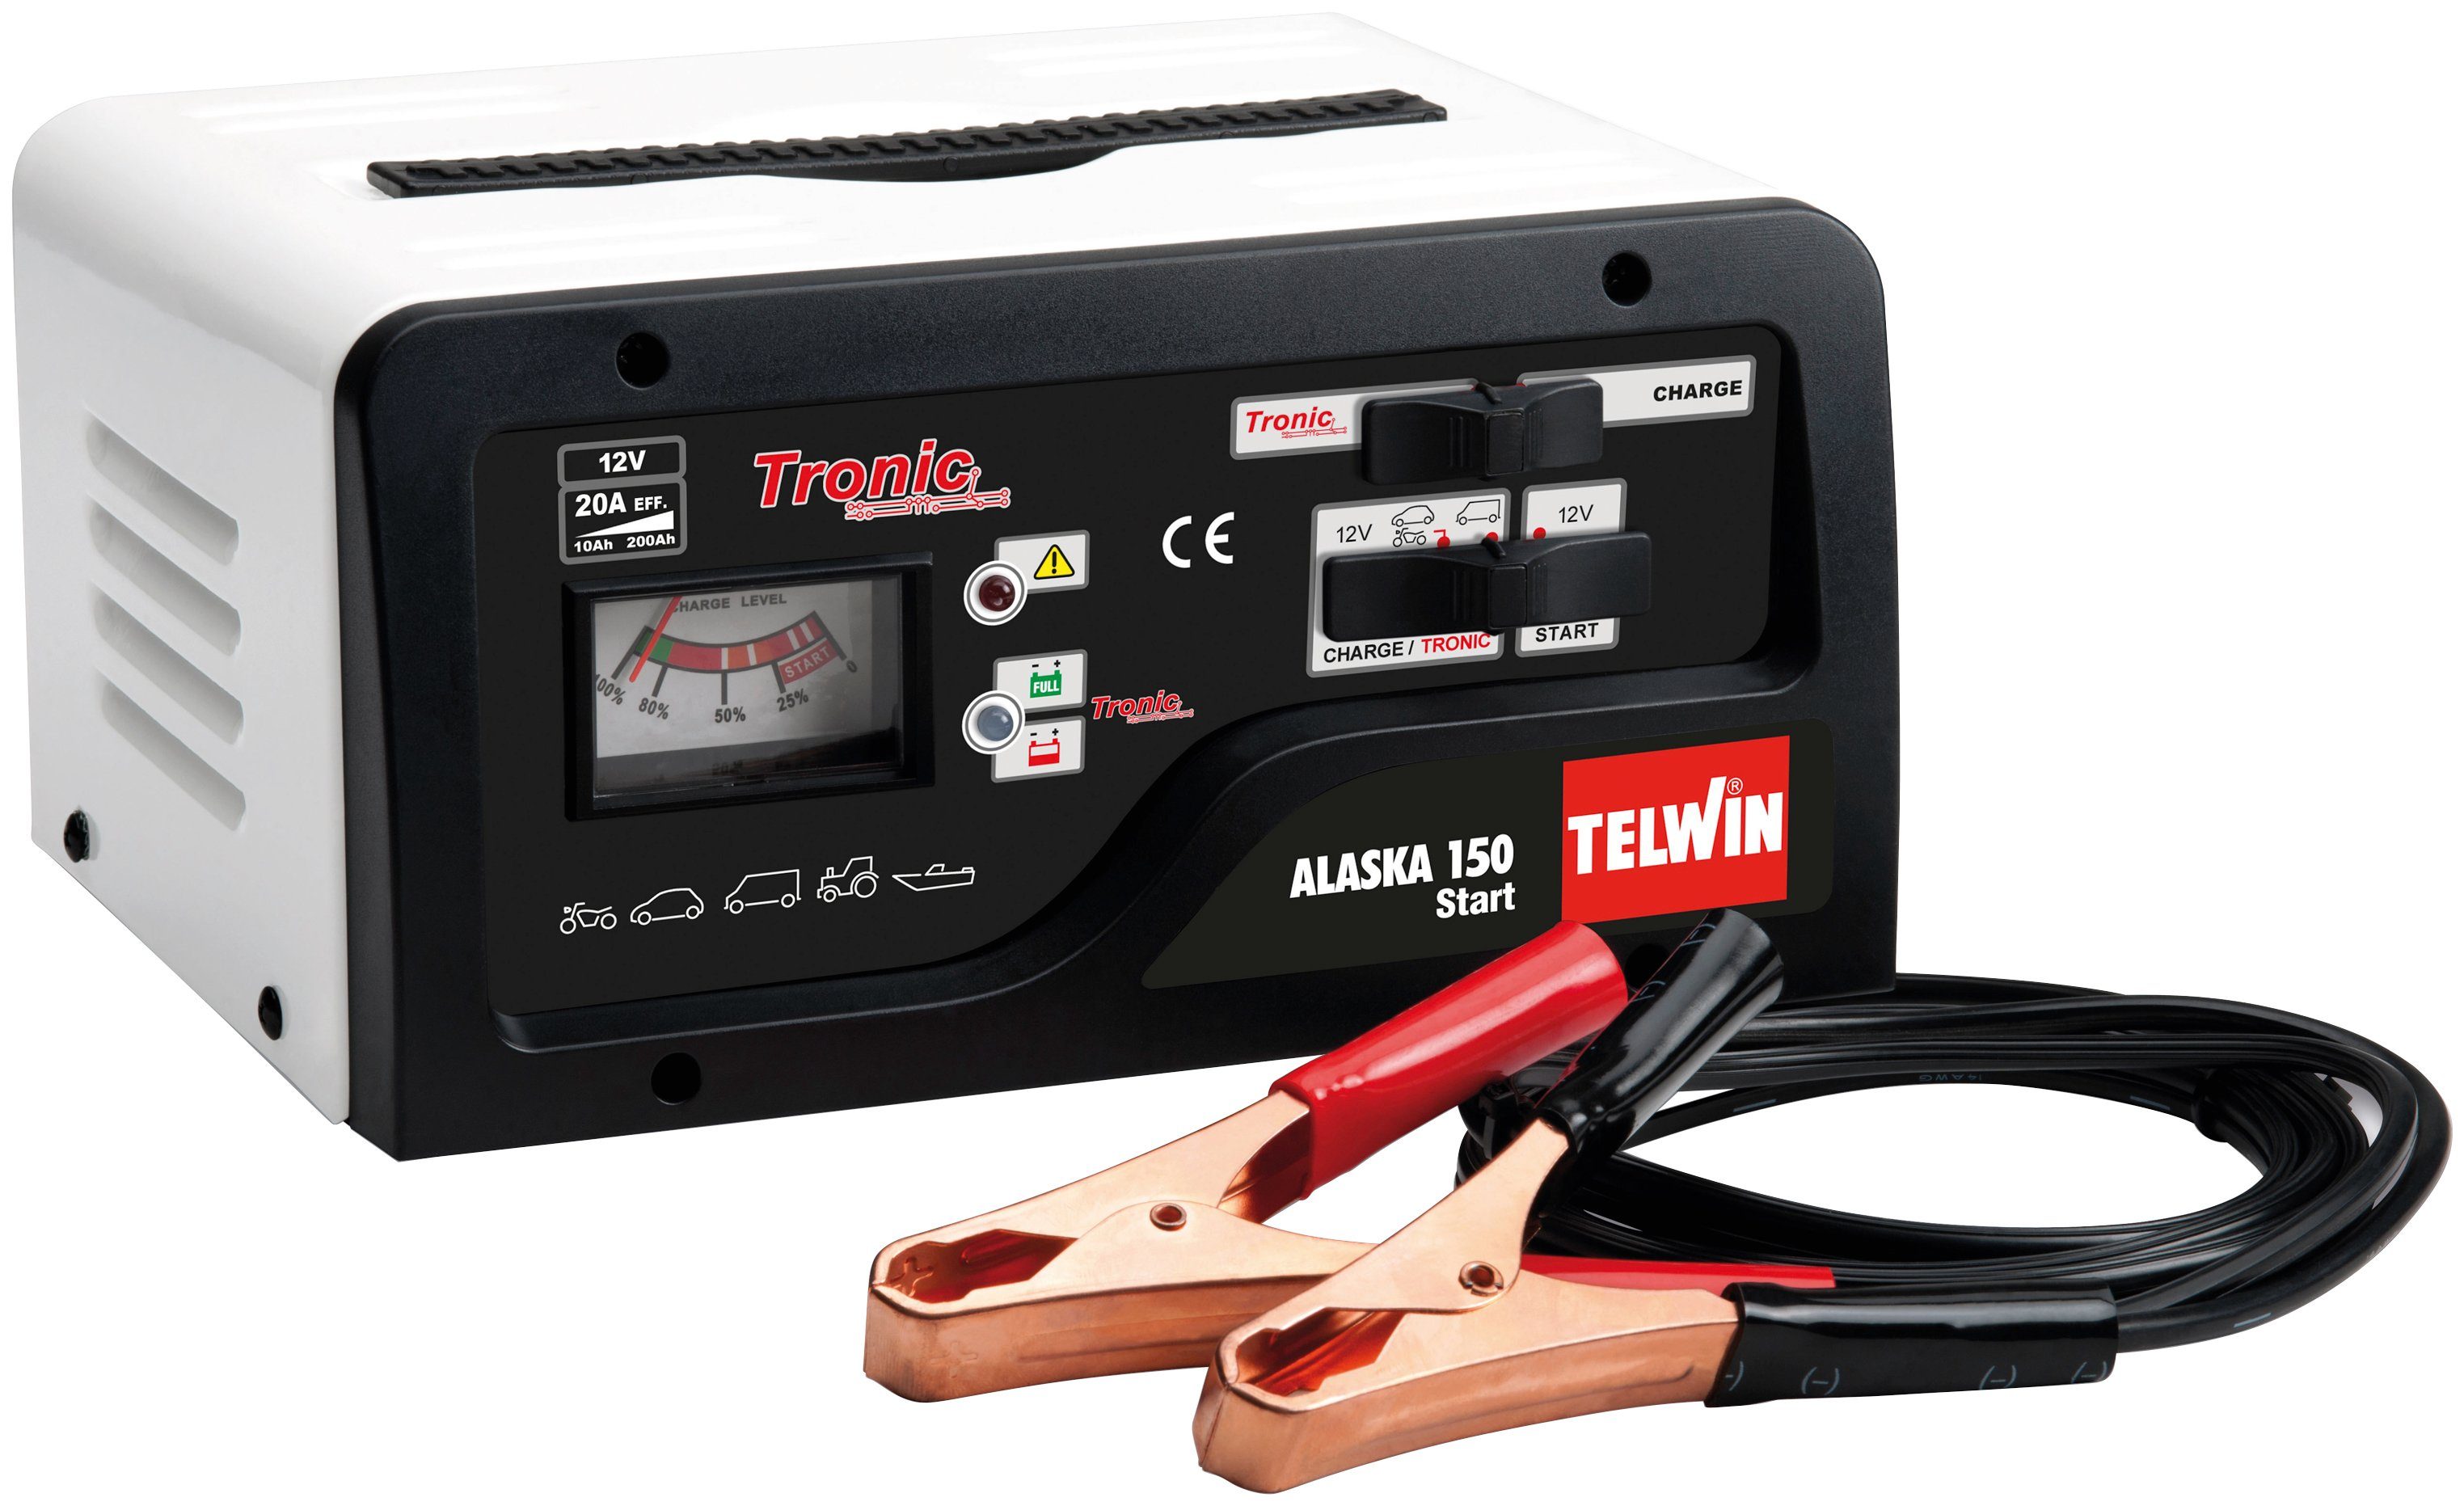 Alaska Telwin 150 (230V Autobatterie-Ladegerät TELWIN Start 12-24V)